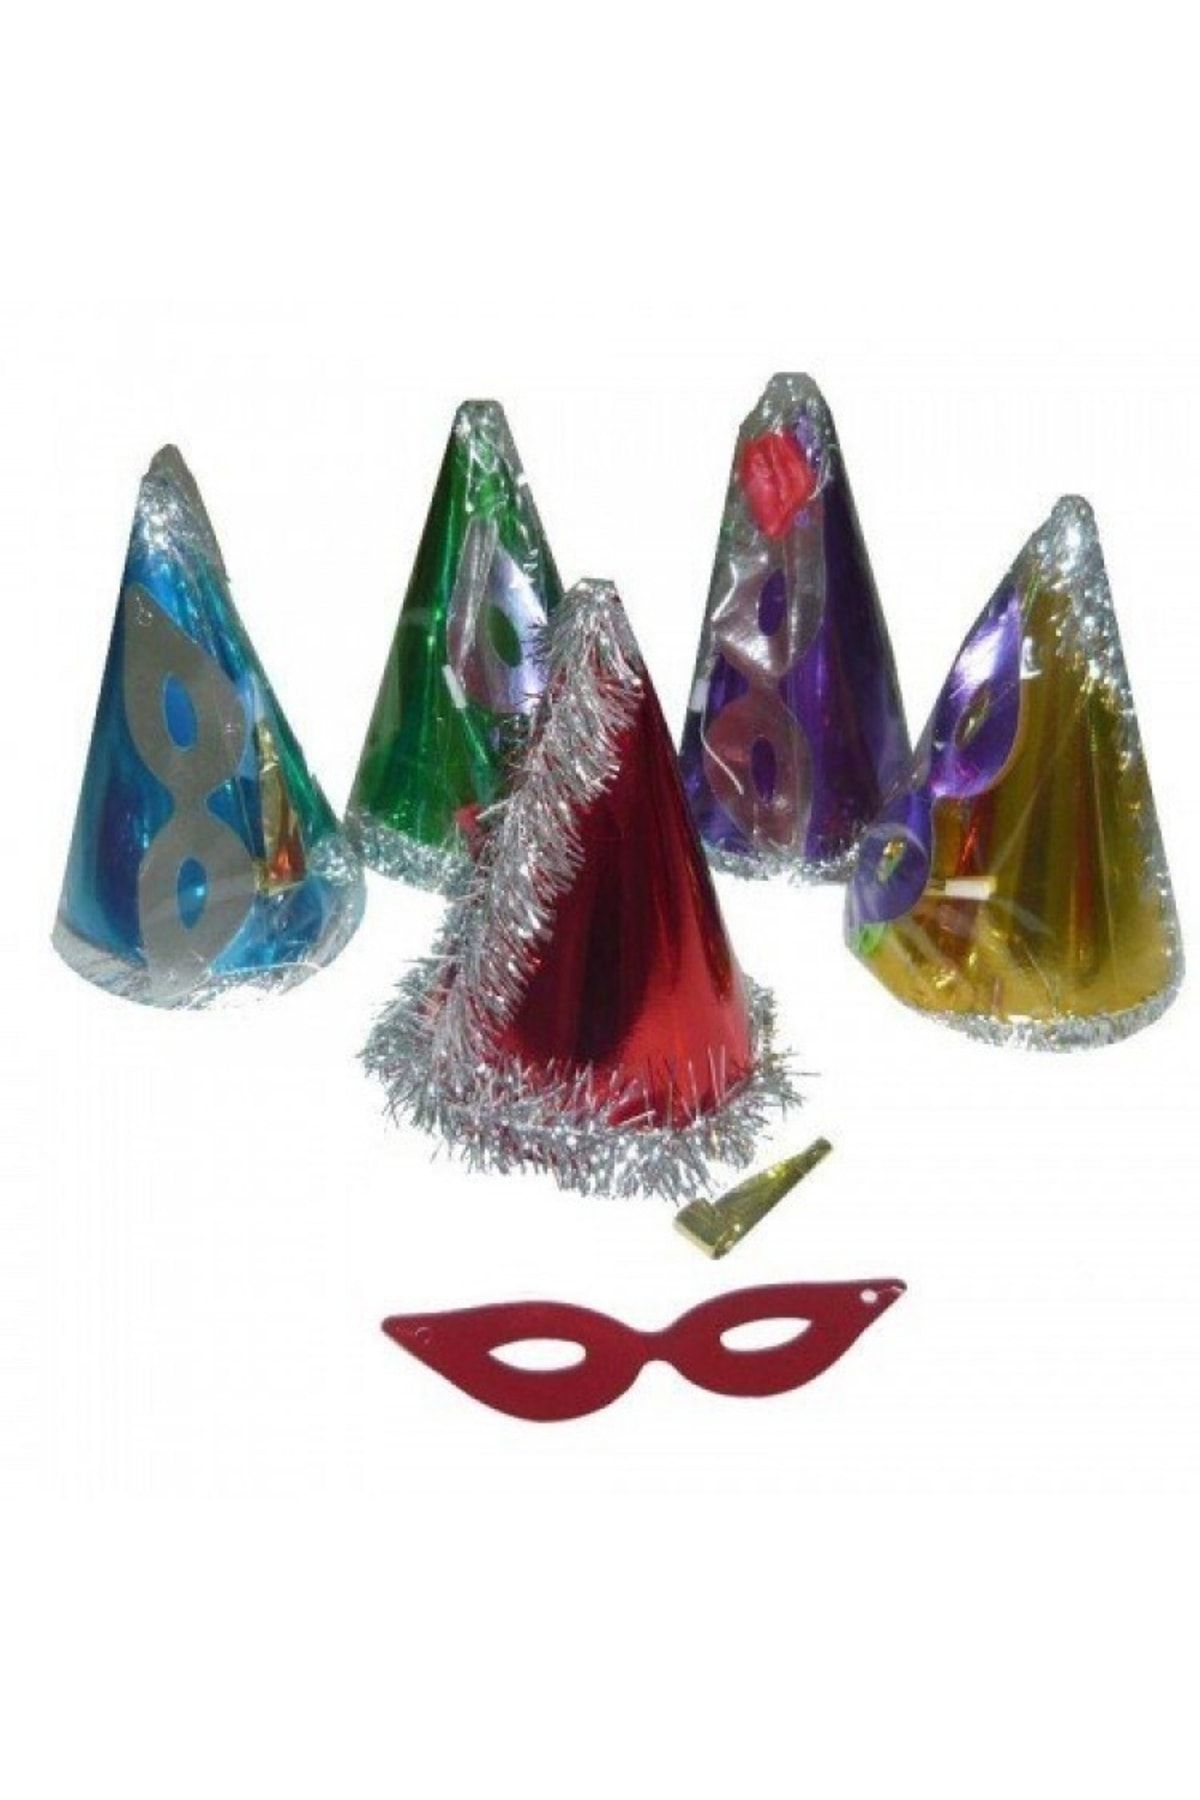 Parti Dolabı 10 Lu Renkli Yılbaşı Şapkası Parti Maske Ve Düdük Seti Kağıt Üçgen Katyon Set Kaynana Dili Düdüğü